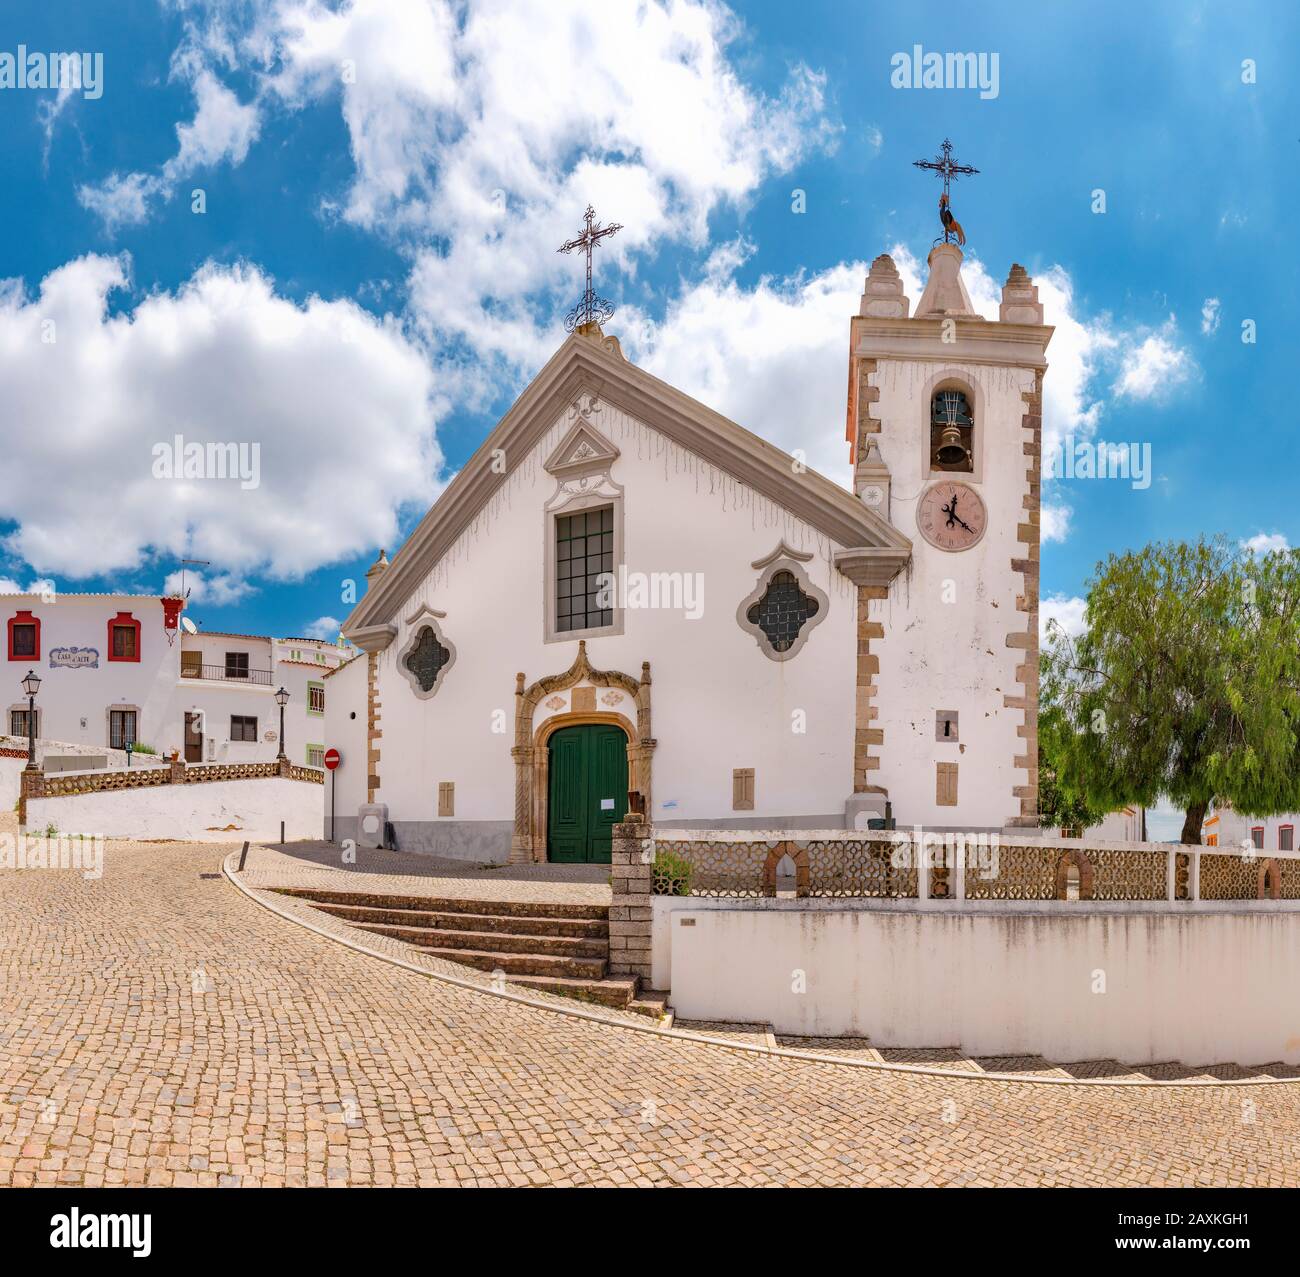 Igreja Matriz de Alte or the Igreja de Nossa Senhora da Assunção, Alte,   Portugal, Stock Photo